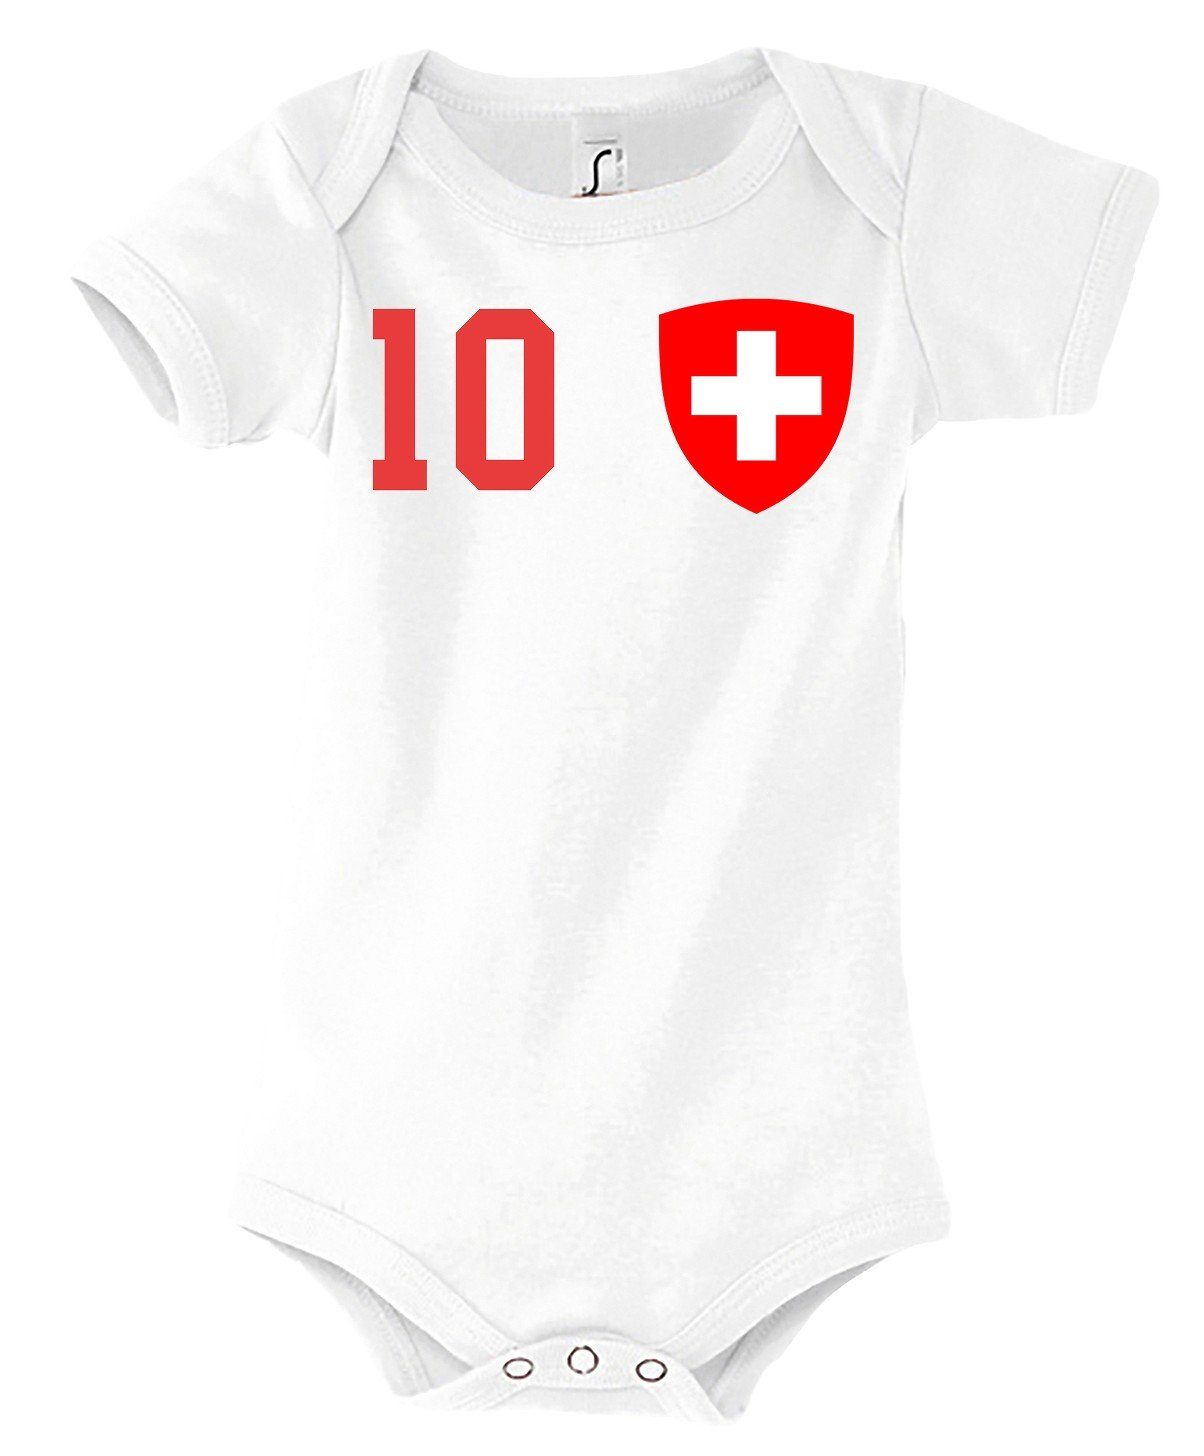 Body mit Kinder Schweiz Baby Youth Strampler Weiß Kurzarmbody Designz trendigem Motiv